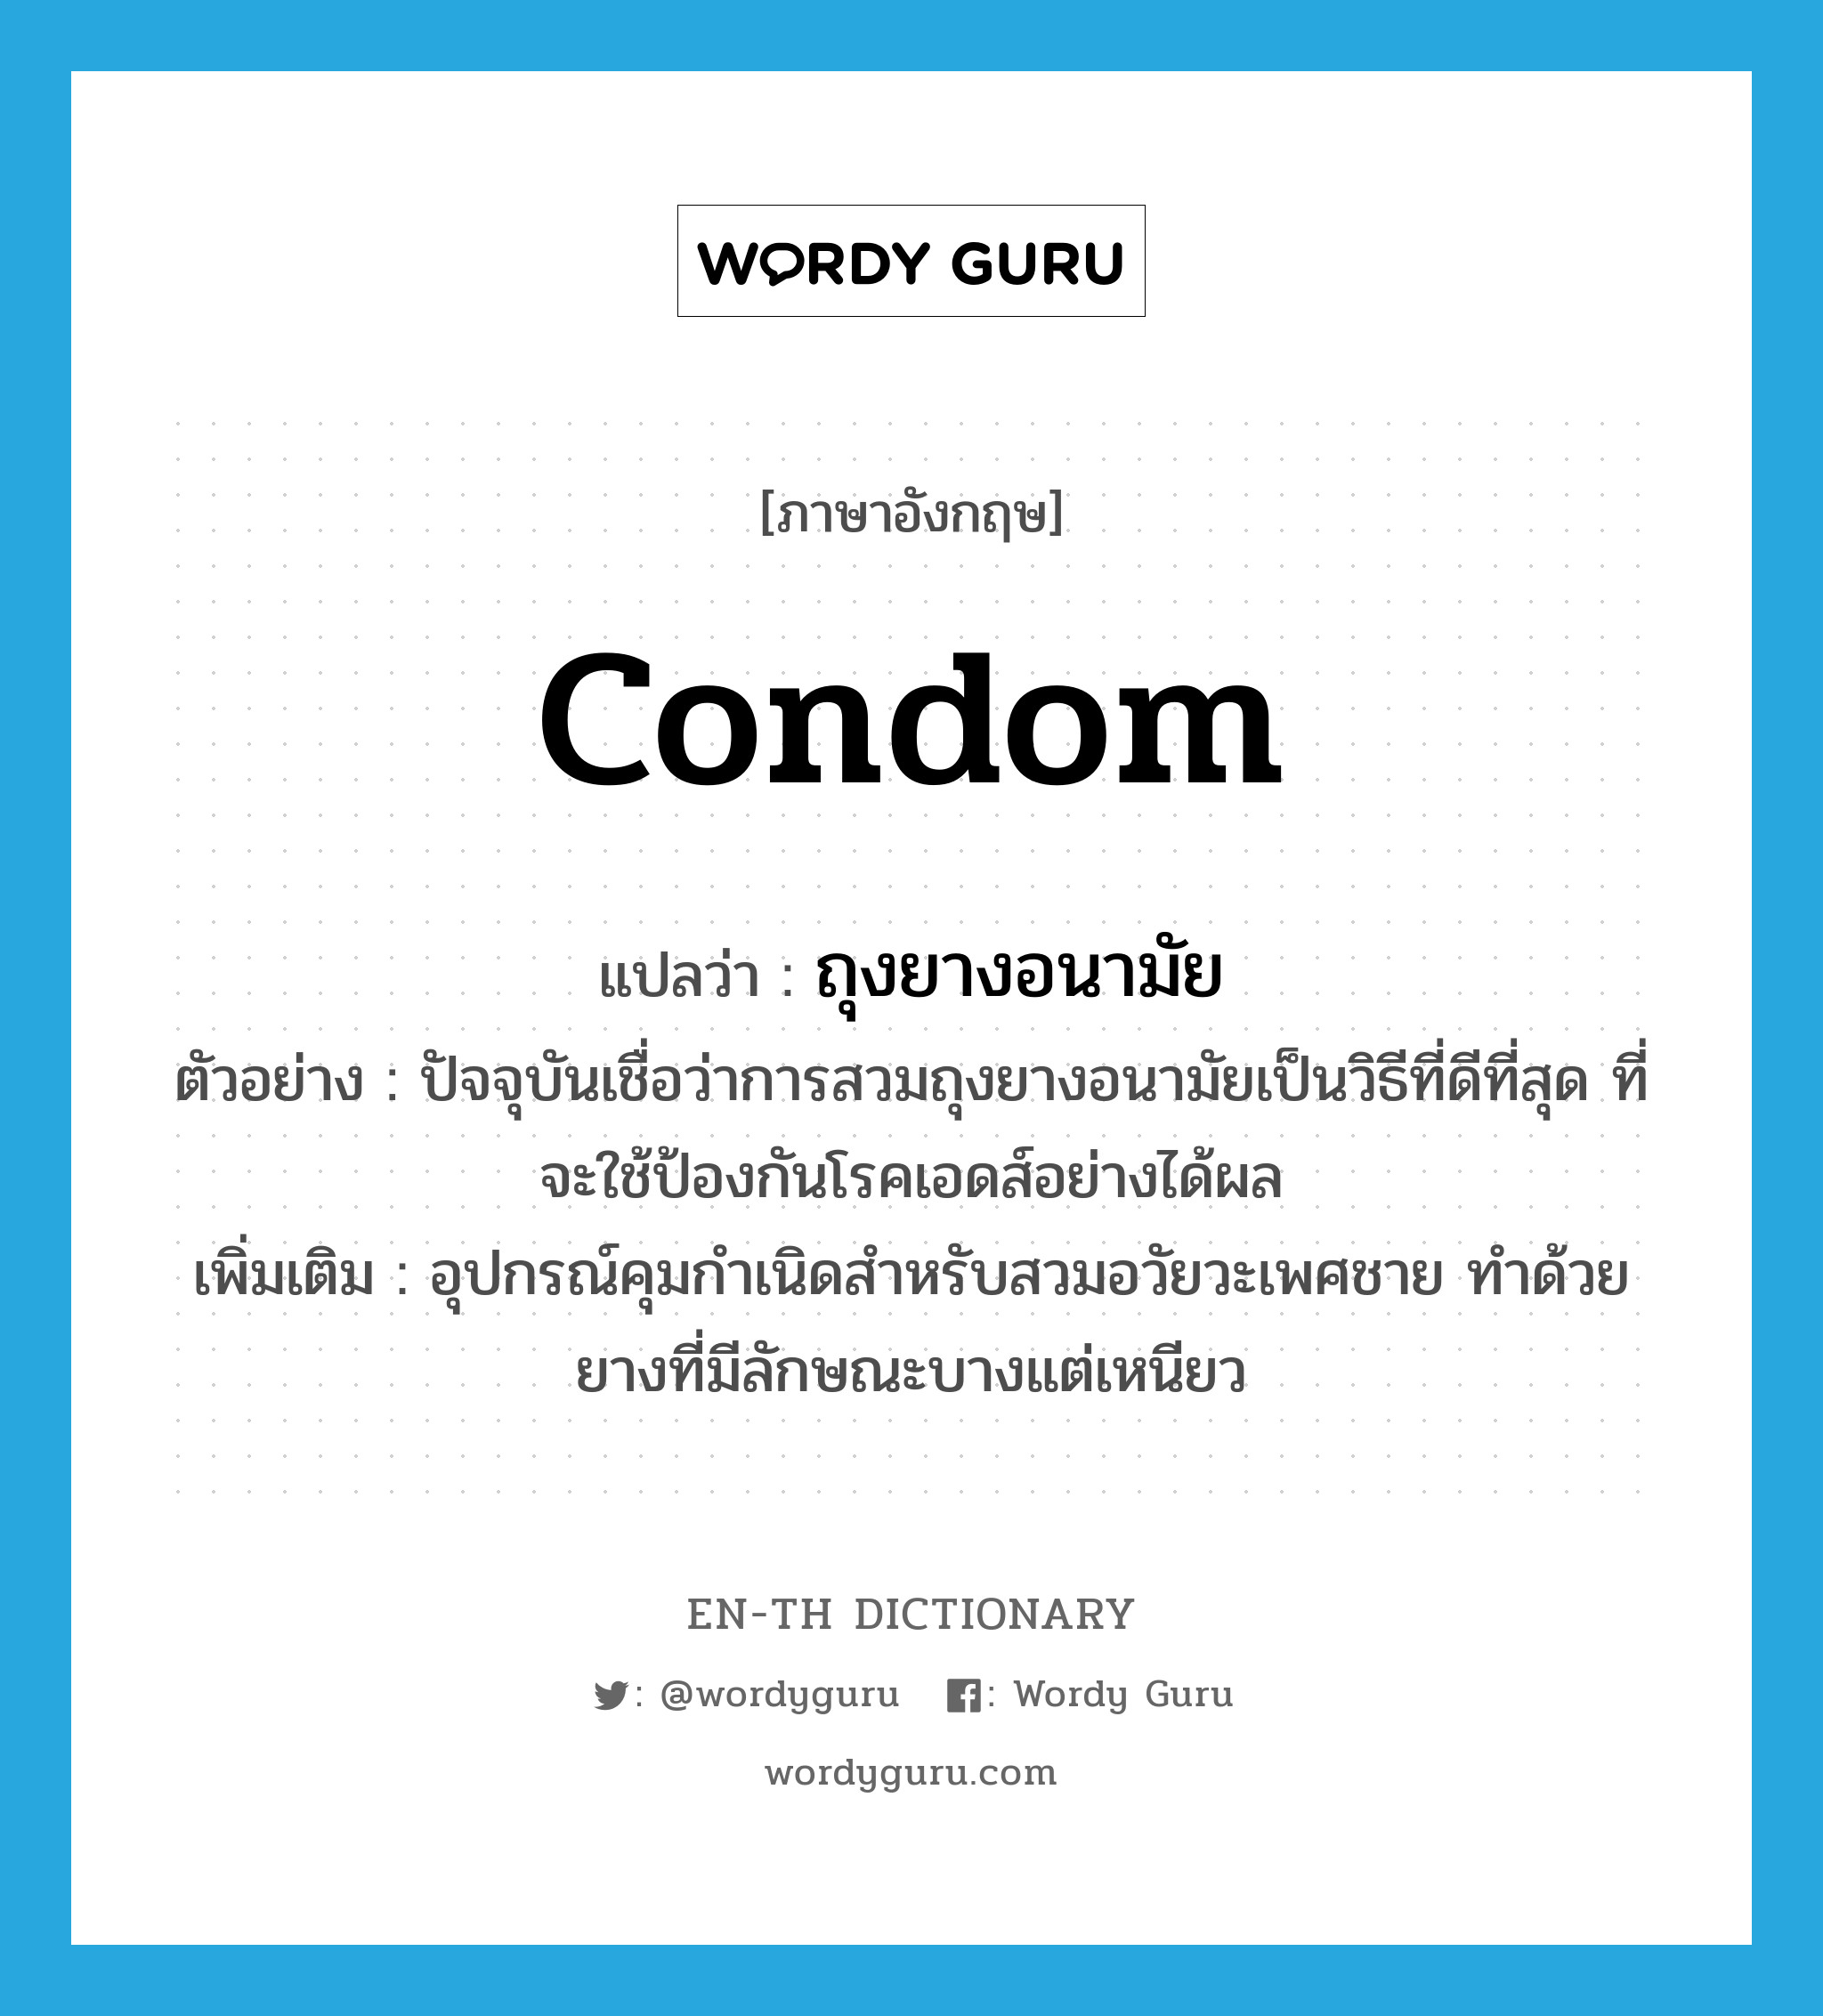 condom แปลว่า?, คำศัพท์ภาษาอังกฤษ condom แปลว่า ถุงยางอนามัย ประเภท N ตัวอย่าง ปัจจุบันเชื่อว่าการสวมถุงยางอนามัยเป็นวิธีที่ดีที่สุด ที่จะใช้ป้องกันโรคเอดส์อย่างได้ผล เพิ่มเติม อุปกรณ์คุมกำเนิดสำหรับสวมอวัยวะเพศชาย ทำด้วยยางที่มีลักษณะบางแต่เหนียว หมวด N